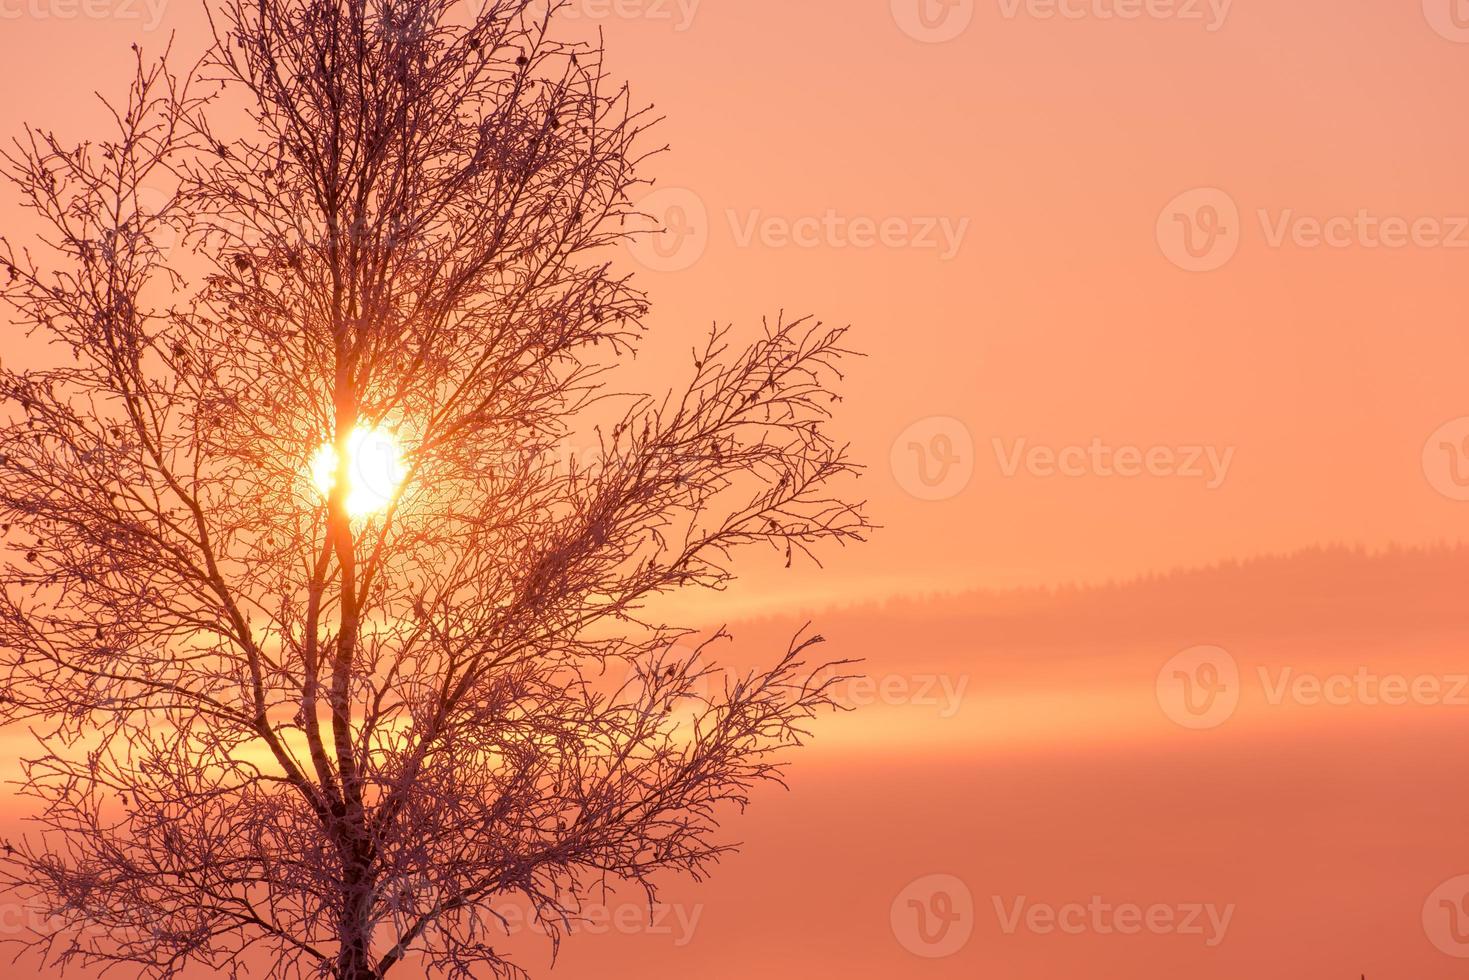 paisaje invernal escénico con árbol solitario foto